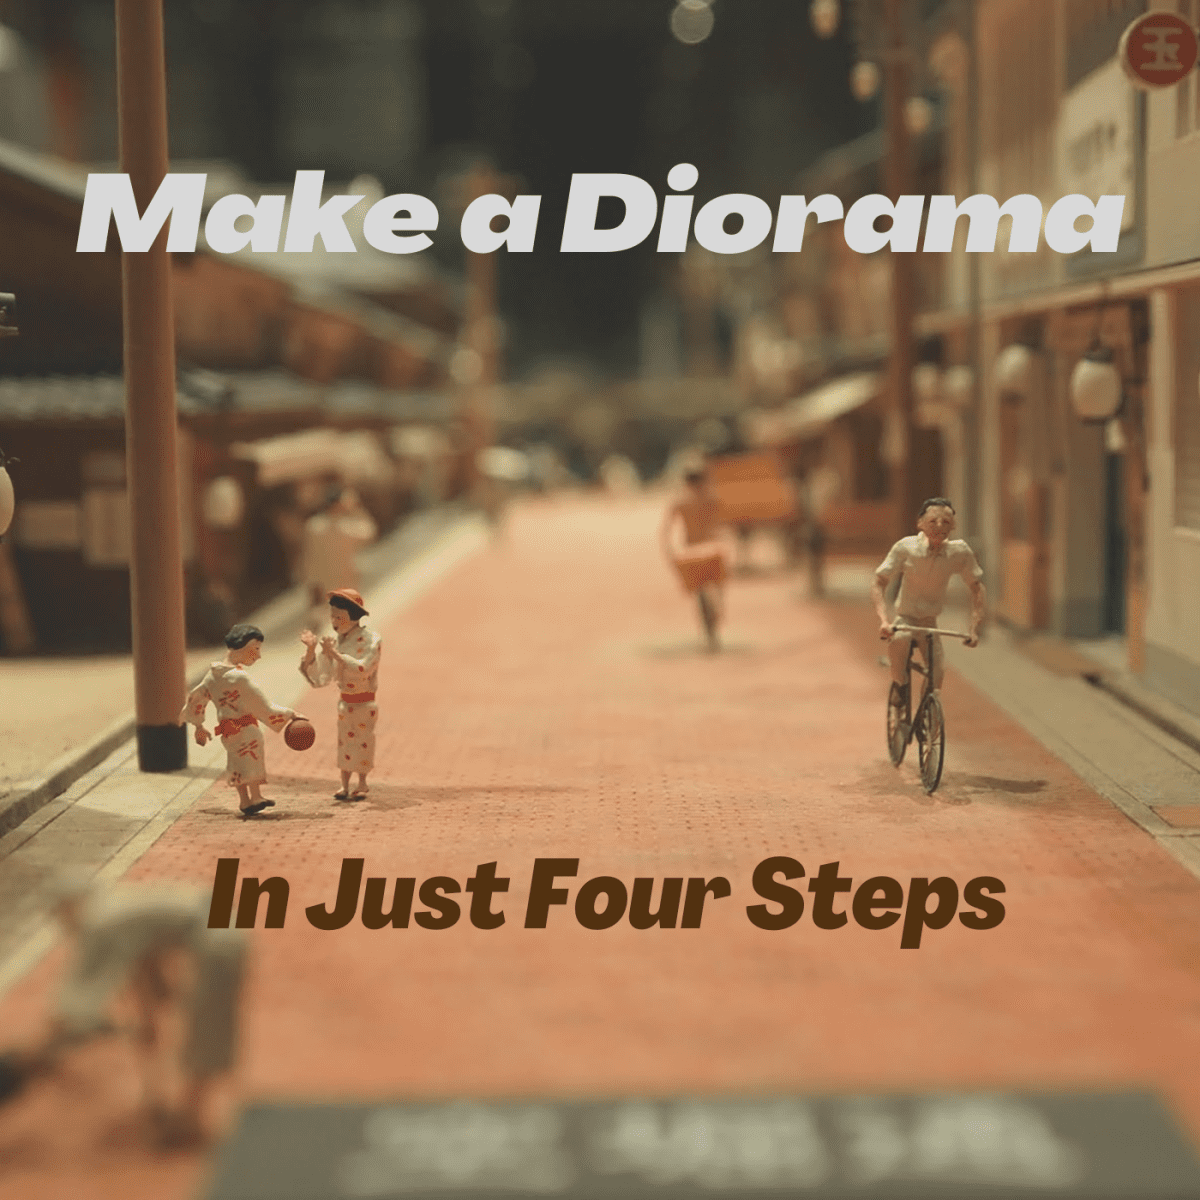 Henstilling Adskille Kartofler How to Make a Diorama From a Shoebox (4 Easy Steps) - FeltMagnet